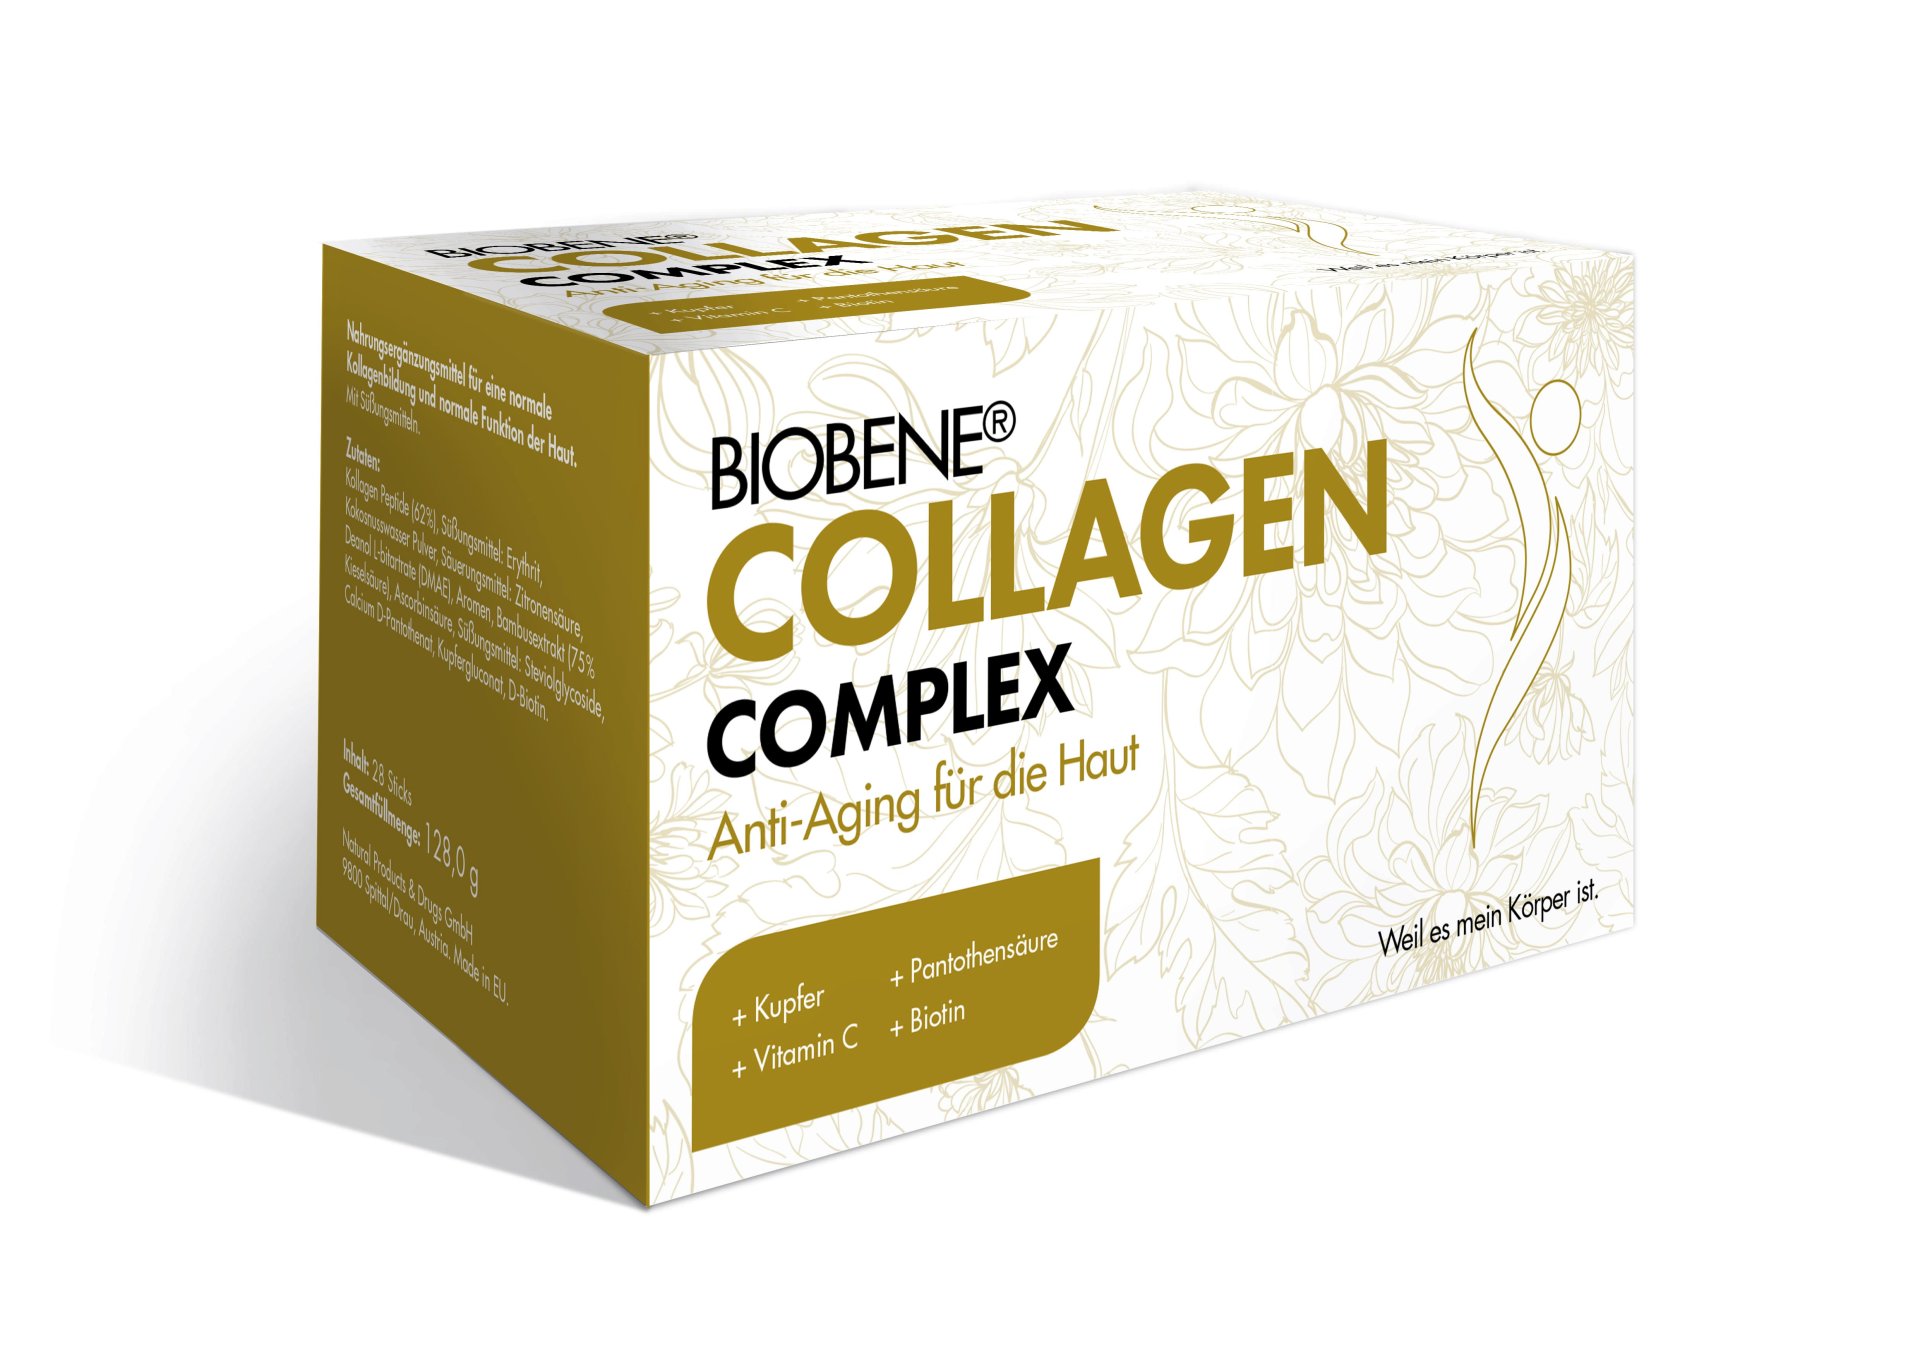 BIOBENE Collagen Complex (28 Stk.)